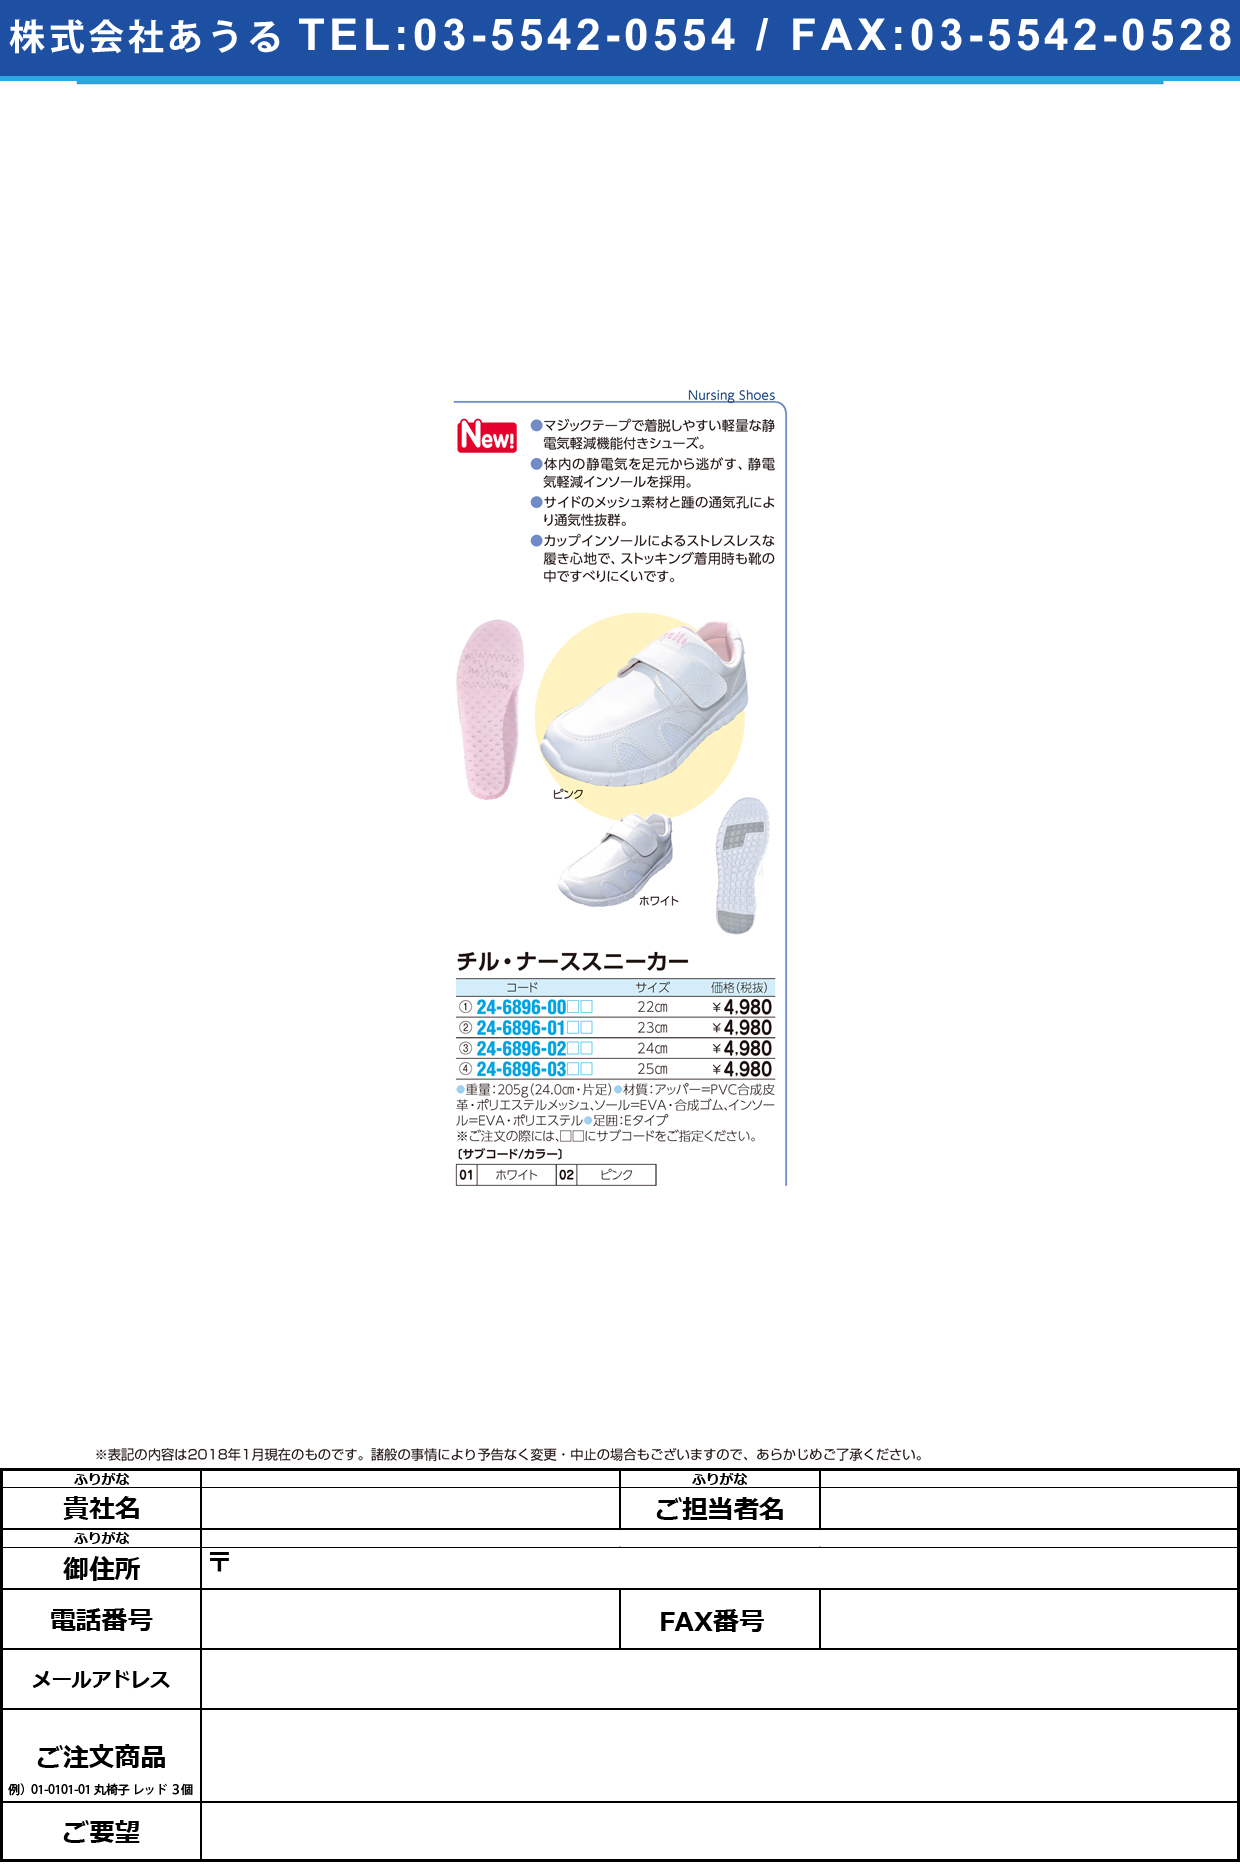 (24-6896-00)チル・ナーススニーカー 22.0CM ﾁﾙﾅｰｽｽﾆｰｶｰ ピンク【1足単位】【2019年カタログ商品】